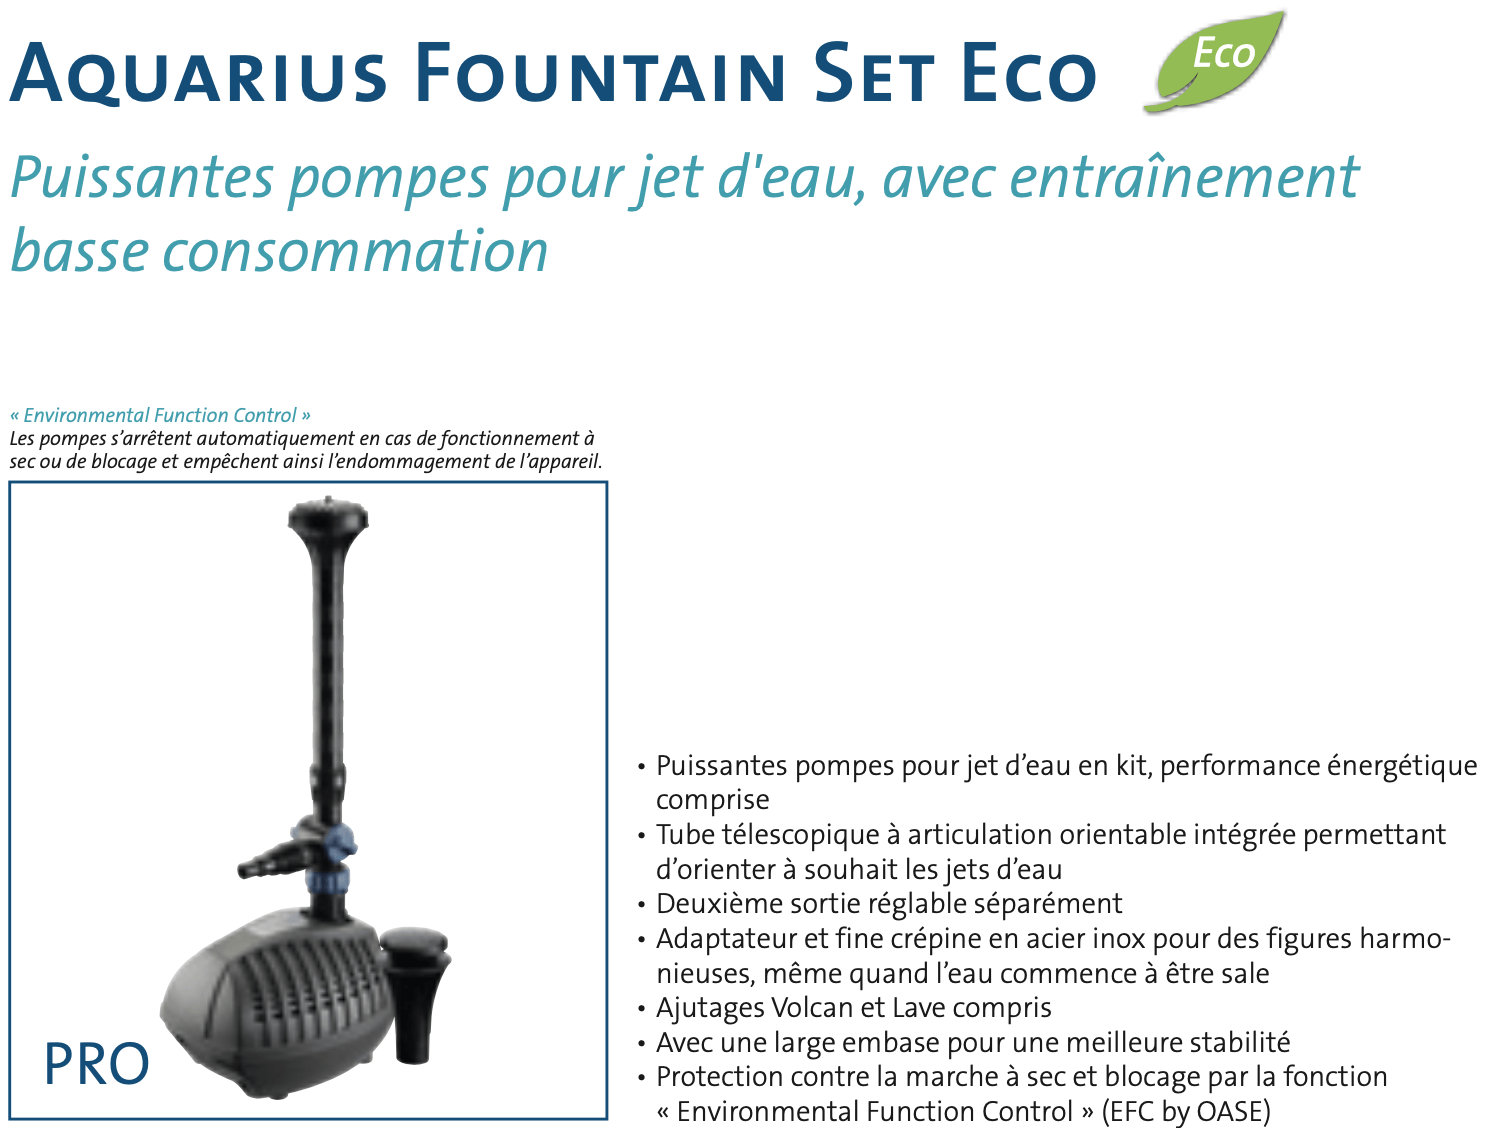 Courbes d'utilisation des pompes Oase Aquarius Fountain Set Eco